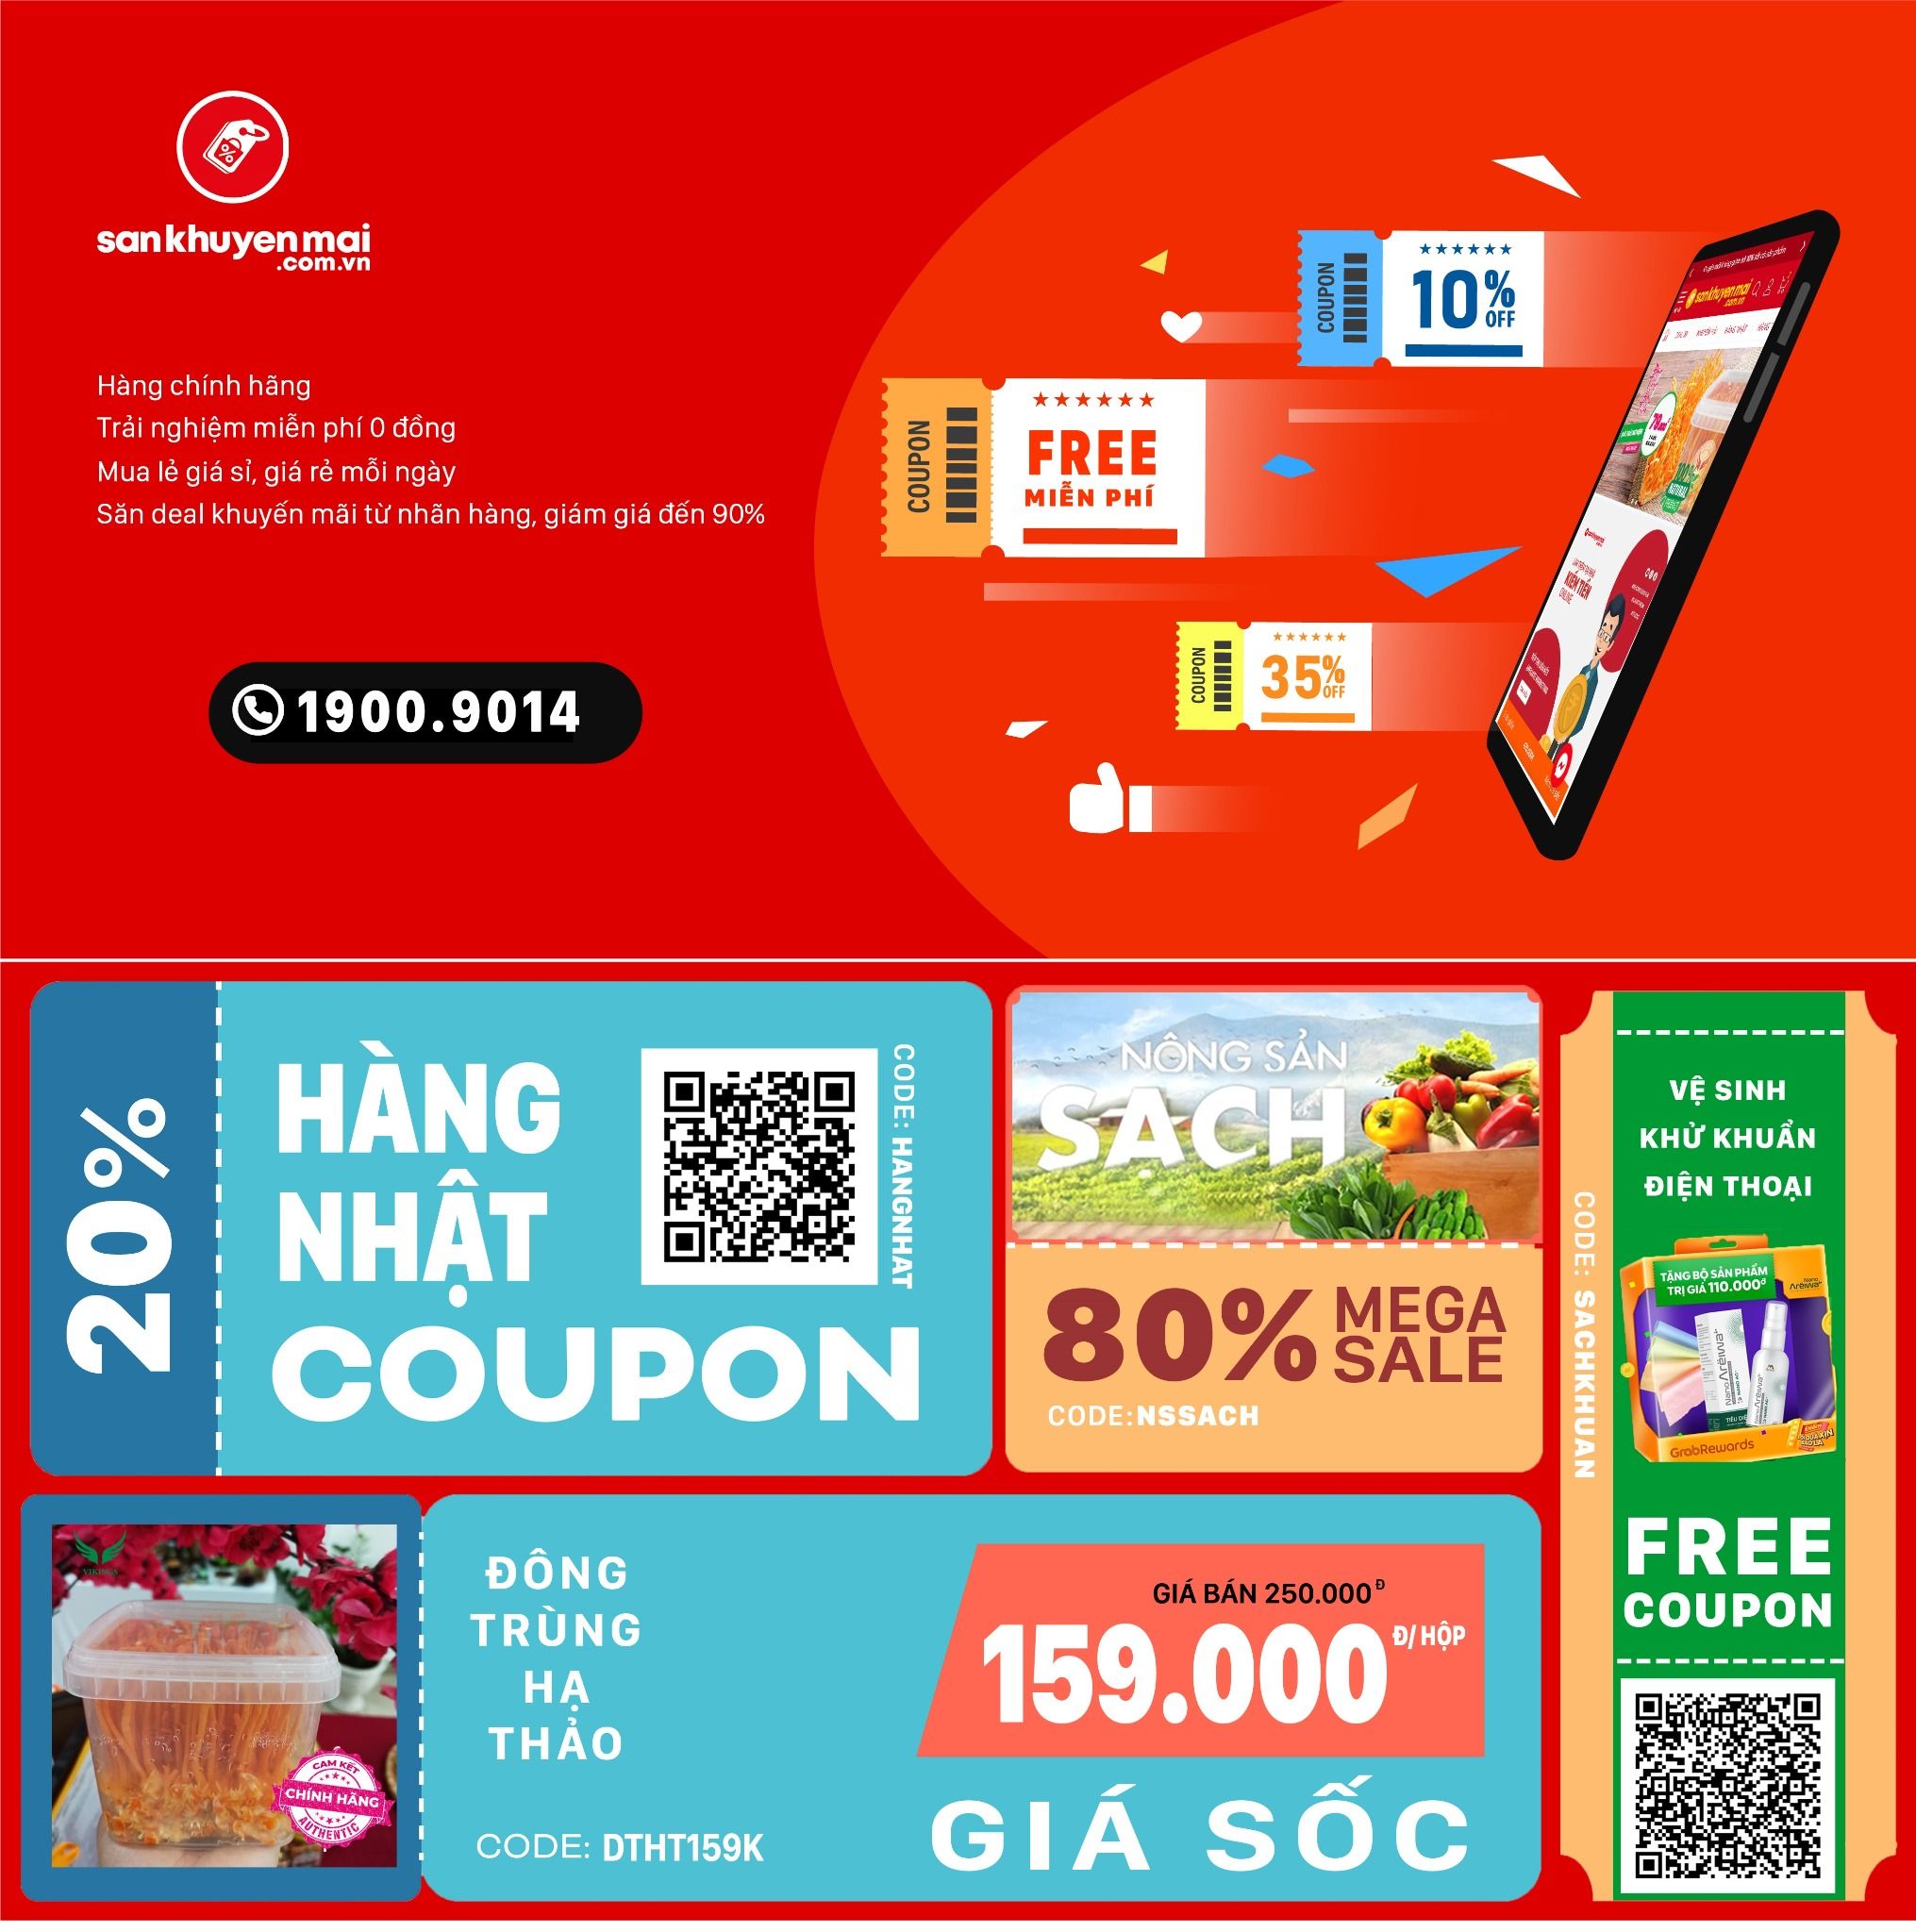  [Evoucher] Phiếu mua hàng điện tử mệnh giá 200.000 đồng sử dụng tại website sankhuyenmai.com.vn 